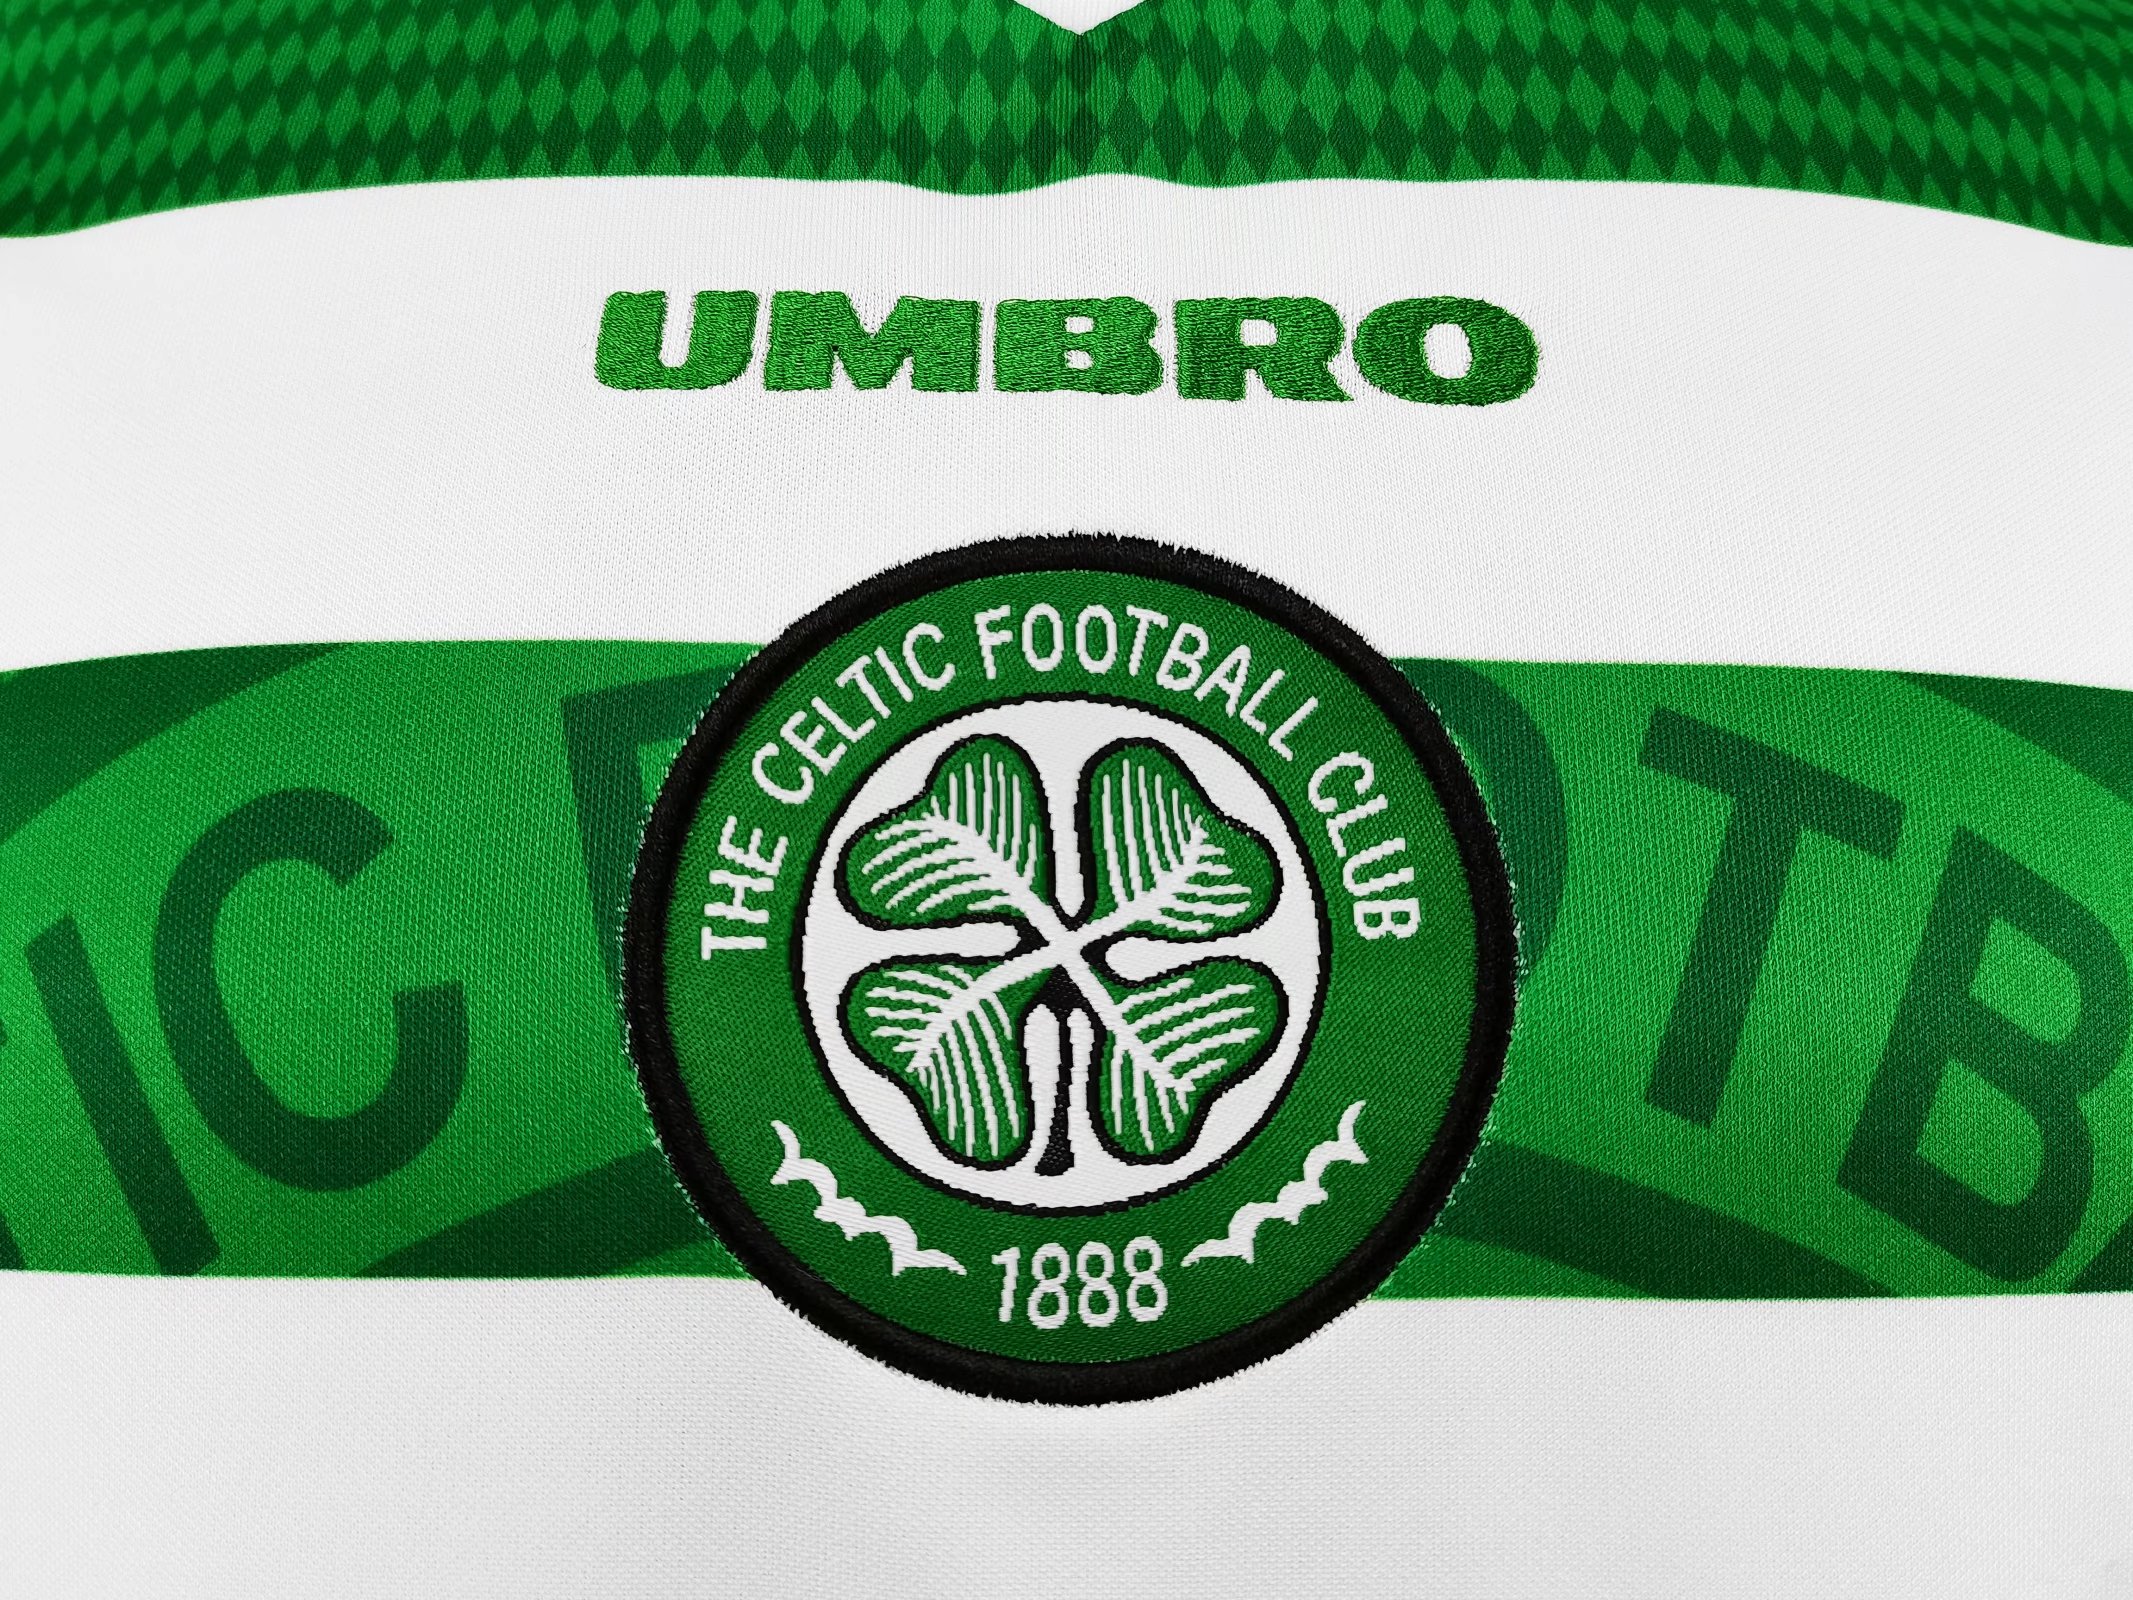 Celtic 1998-99 Home Kit